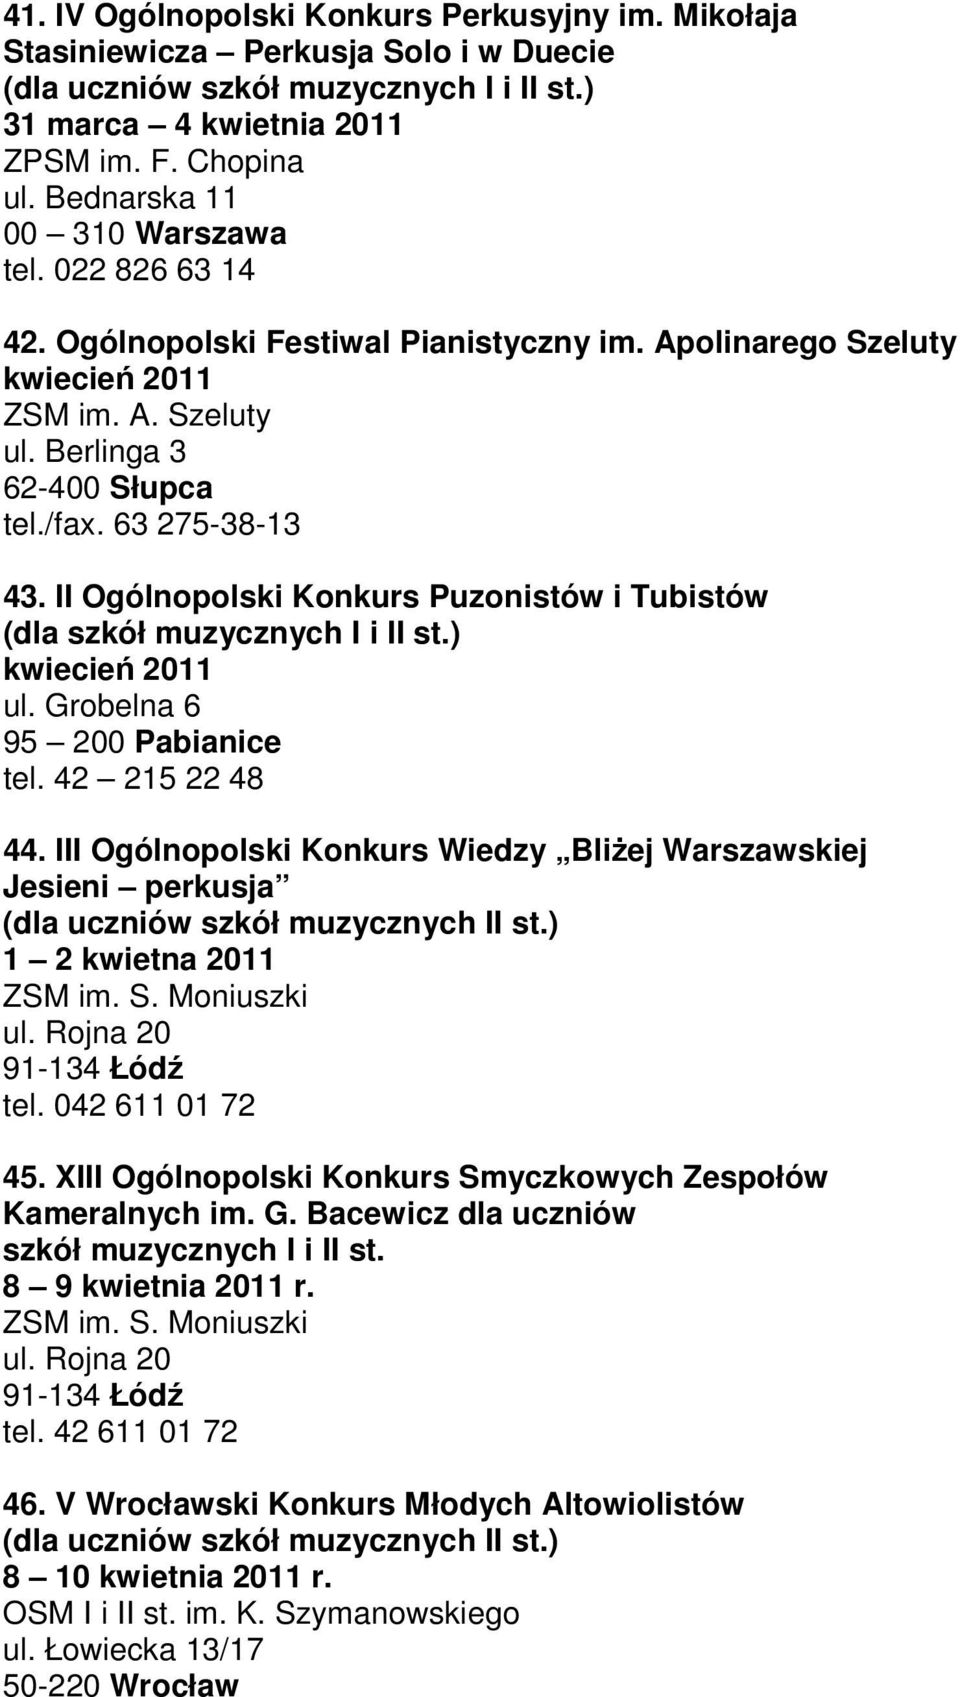 II Ogólnopolski Konkurs Puzonistów i Tubistów (dla szkół muzycznych I i II st.) kwiecień 2011 ul. Grobelna 6 95 200 Pabianice tel. 42 215 22 48 44.